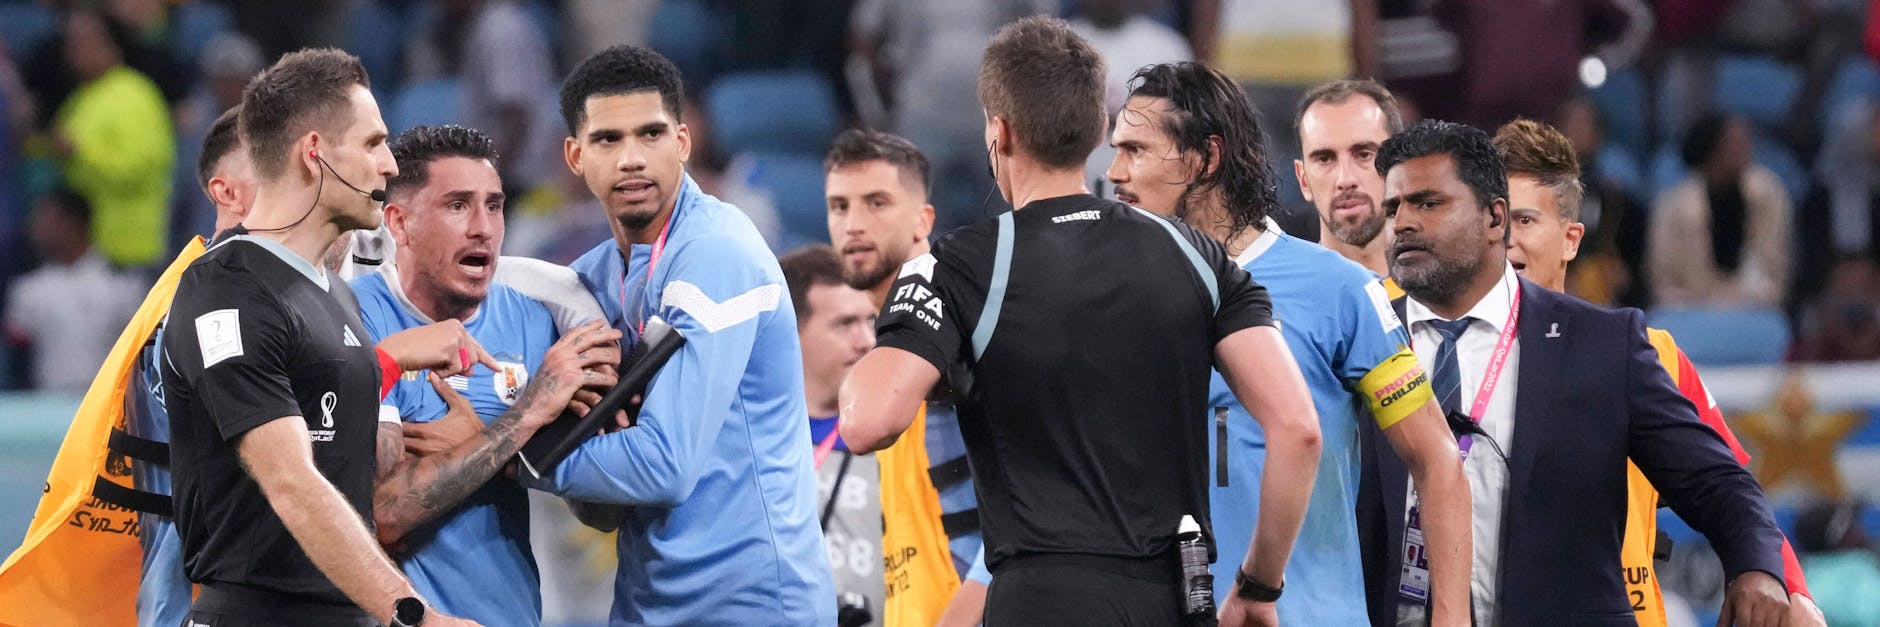 Uruguays Spieler attackieren den Berliner Schiedsrichter Daniel Siebert nach dem Spiel gegen Ghana. Die Tumulte scheinen nun Konsequenzen zu haben&nbsp;–&nbsp;für Siebert.